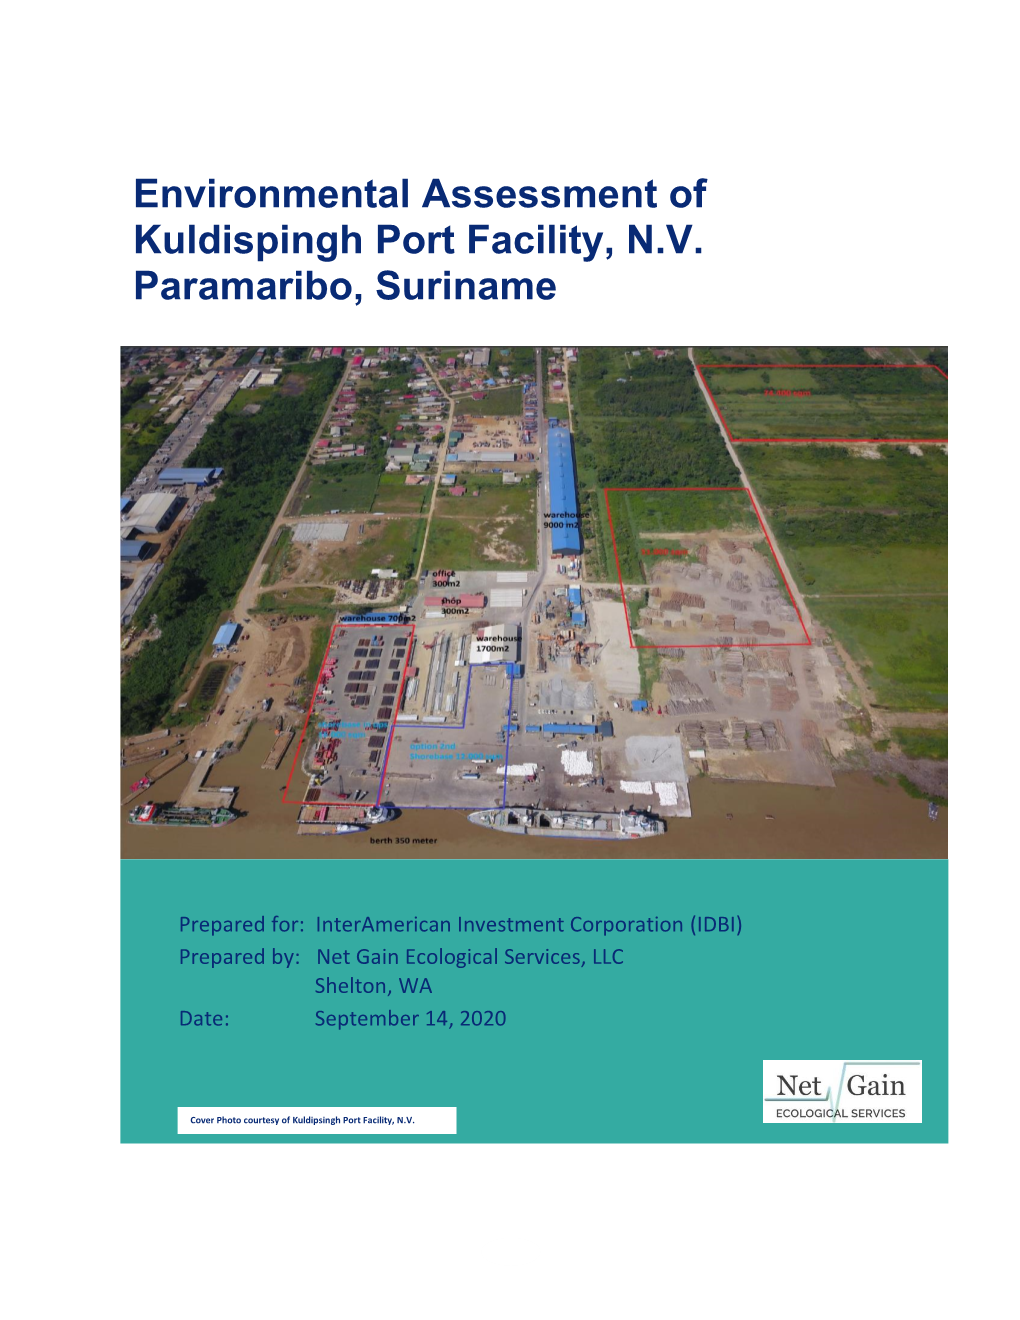 Environmental Assessment of Kuldispingh Port Facility, N.V. Paramaribo, Suriname